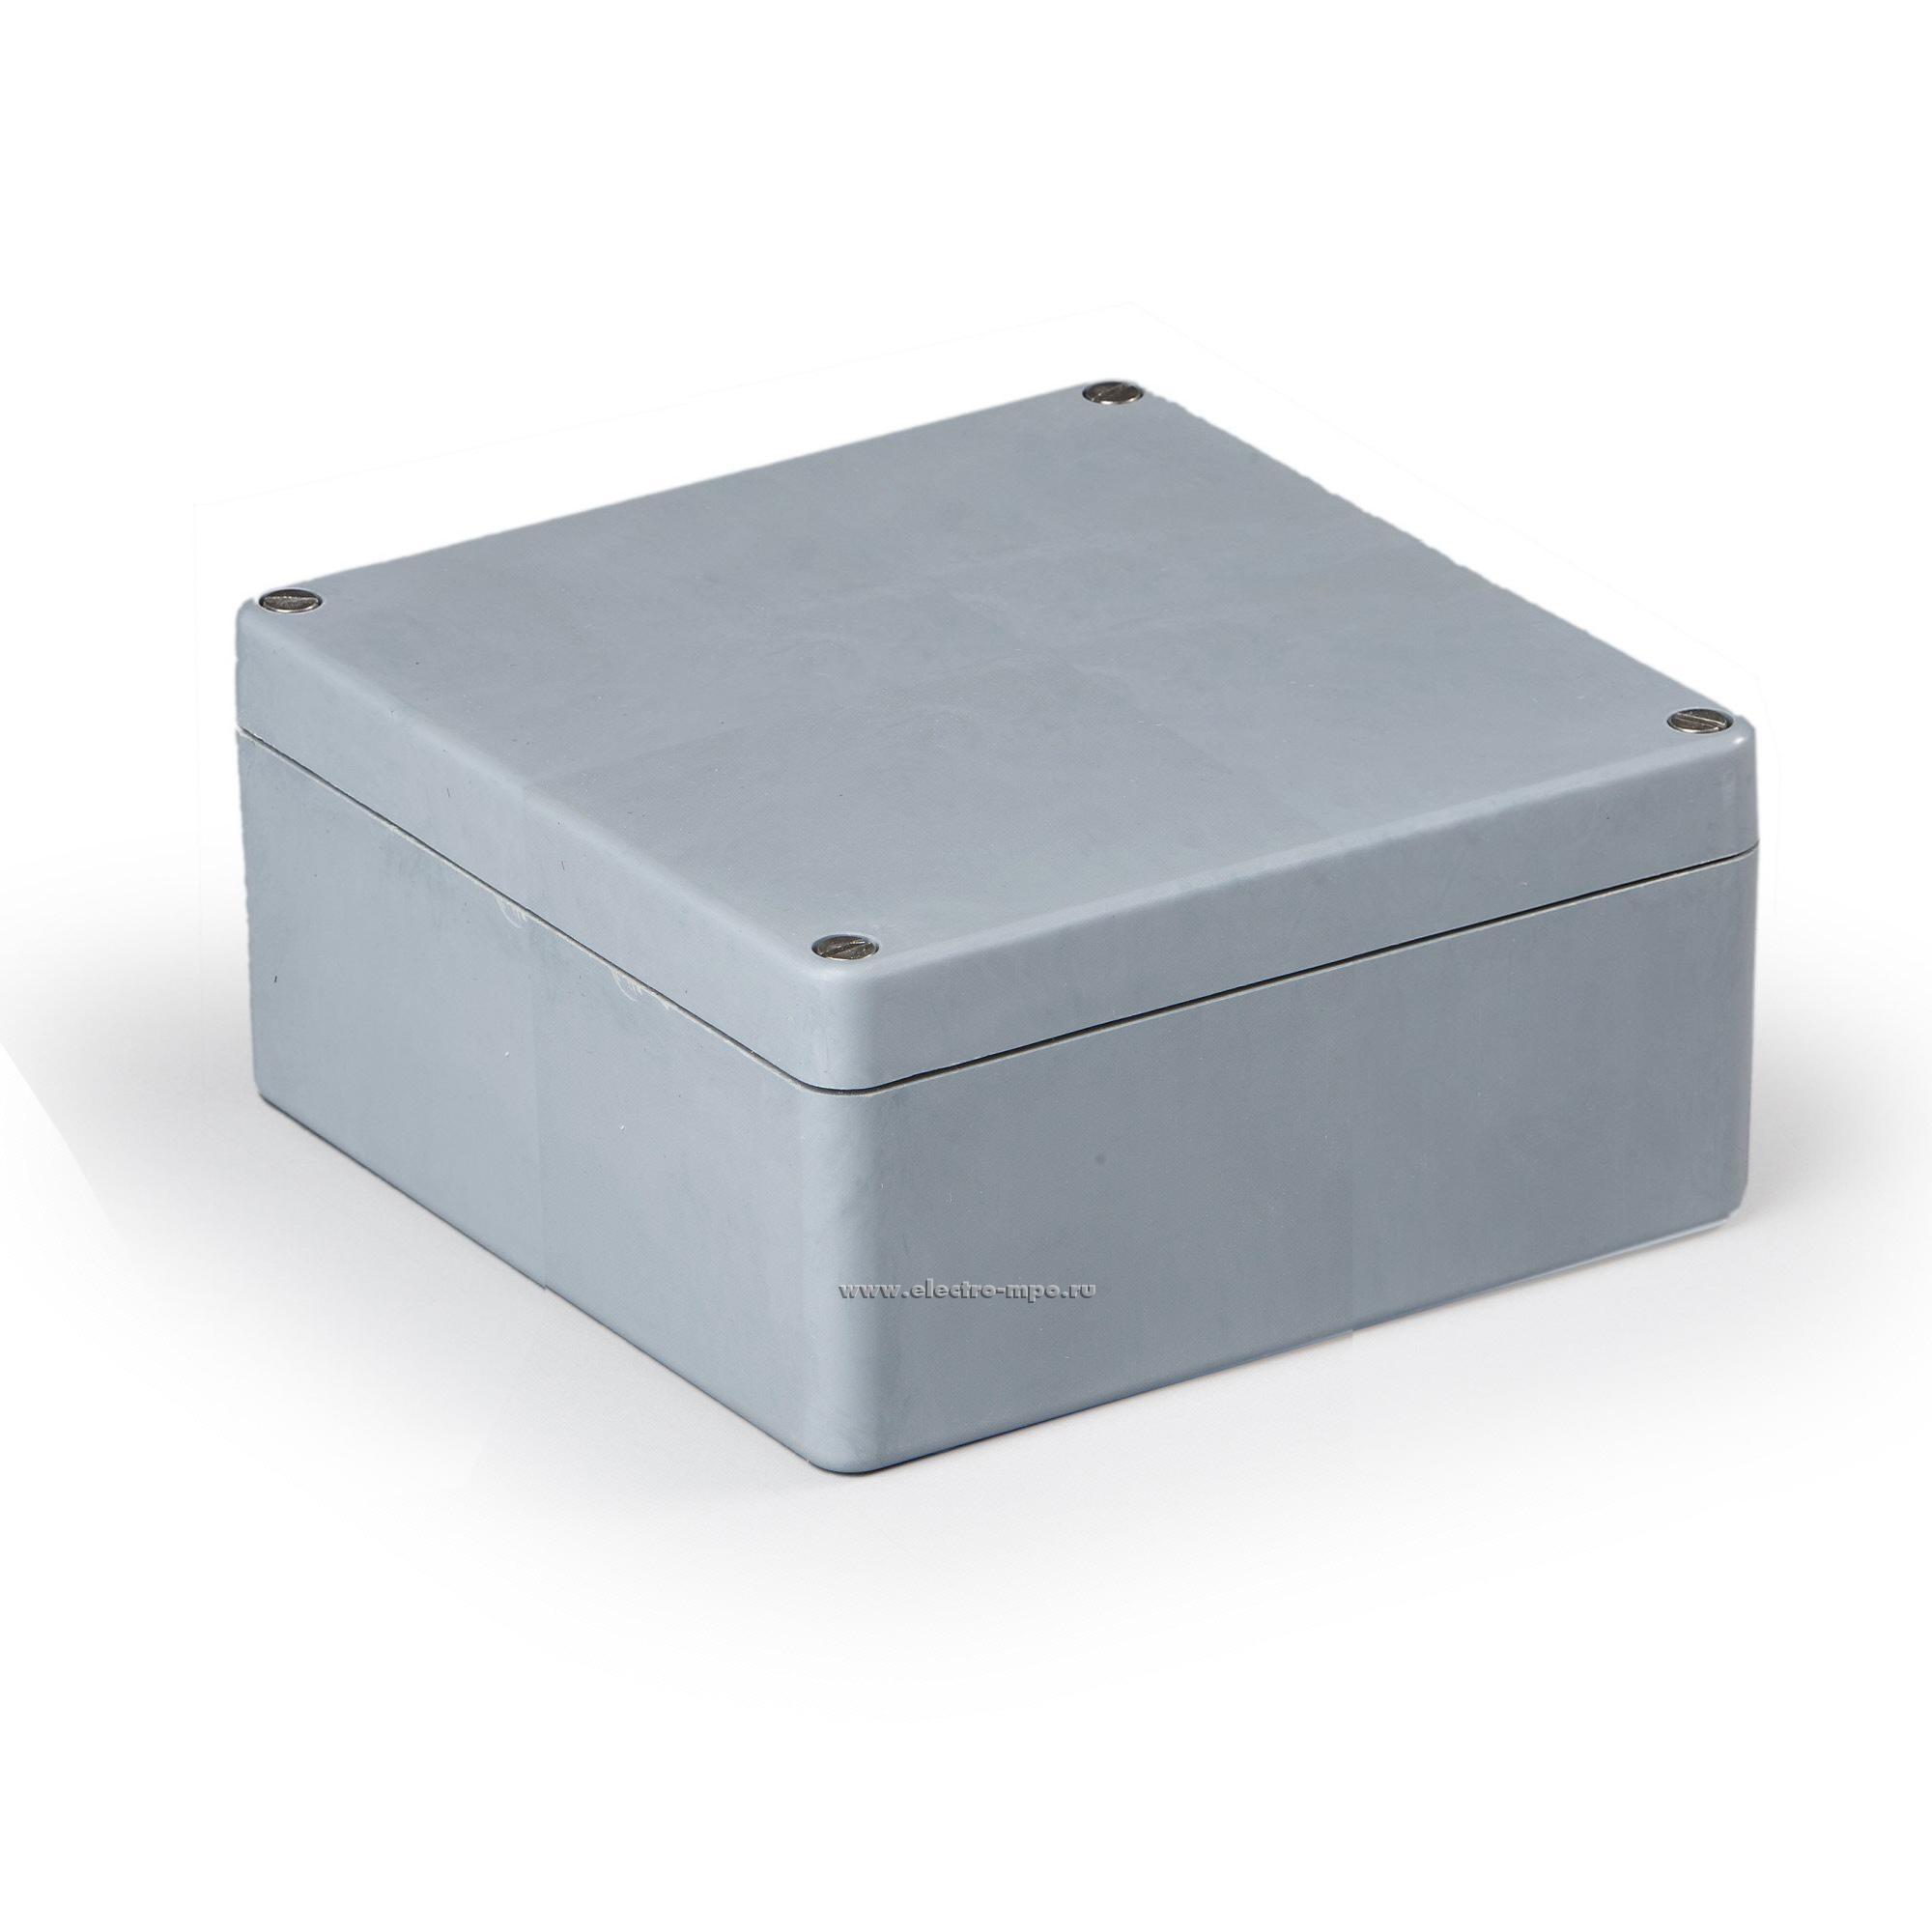 К0335. Коробка MGRP161609 распаечная пластиковая без сальников 160х160х91мм IP66 (Ensto)